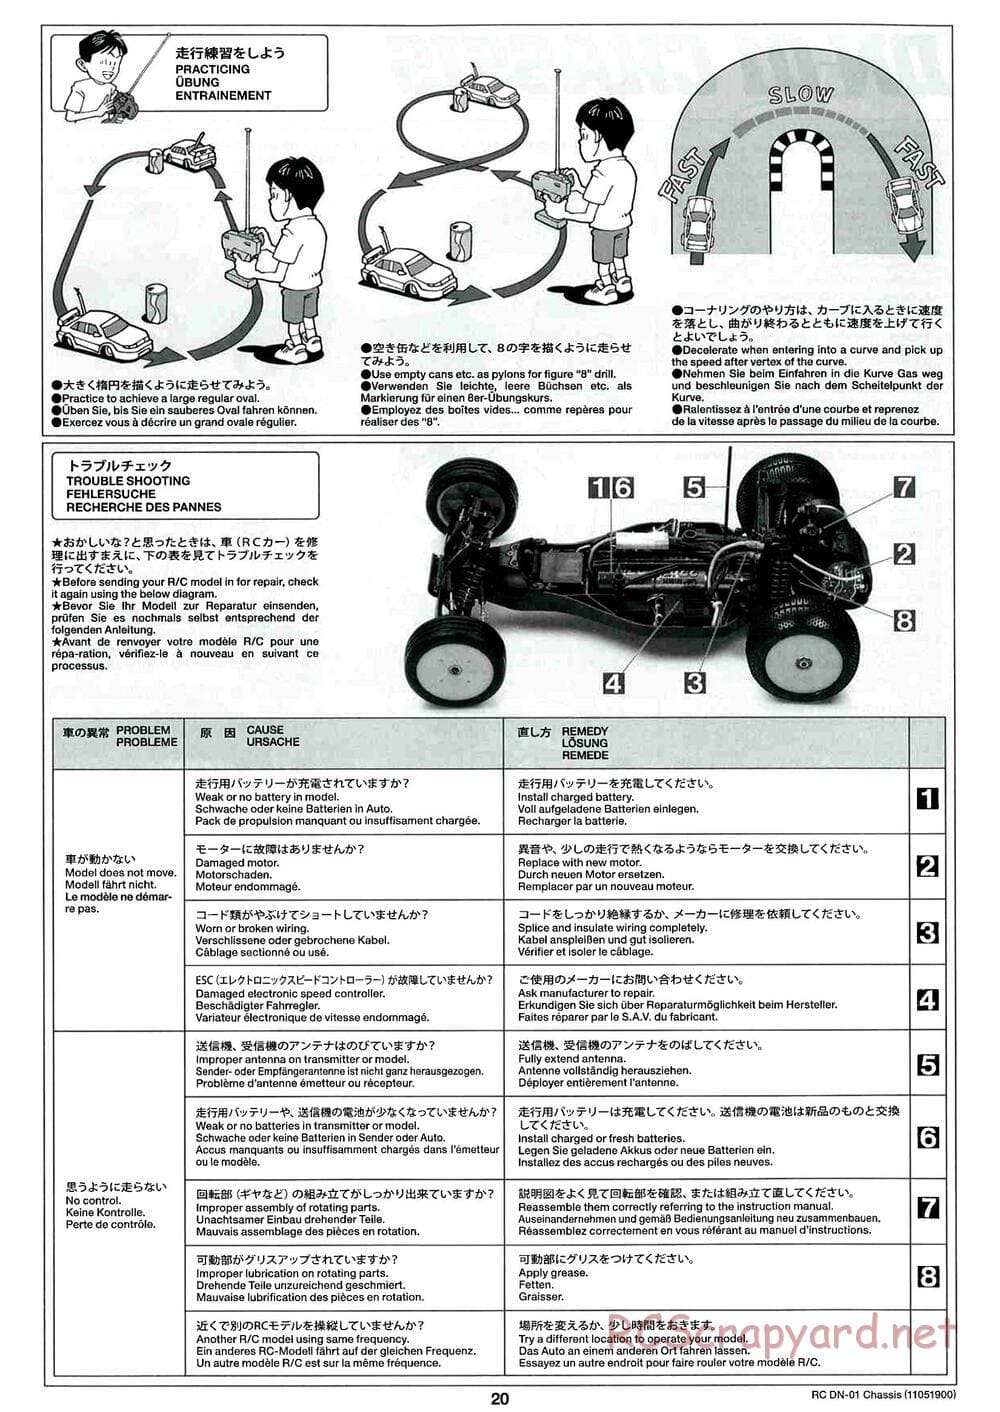 Tamiya - DN-01 Chassis - Manual - Page 20